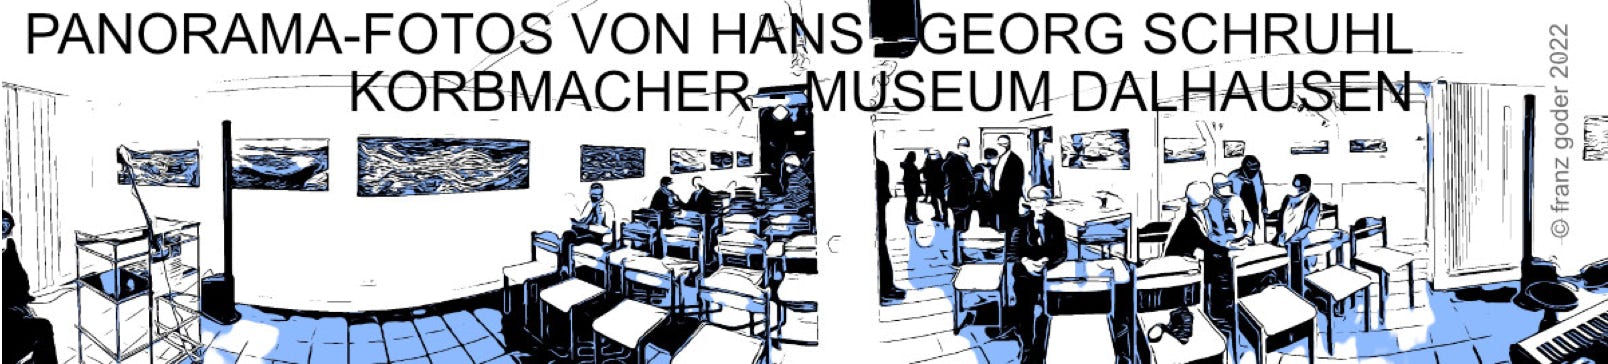 ausstellung_hans_georg_schruhl_panorama-fotos_korbmacher_museum_danhausen_foto_franz_goder